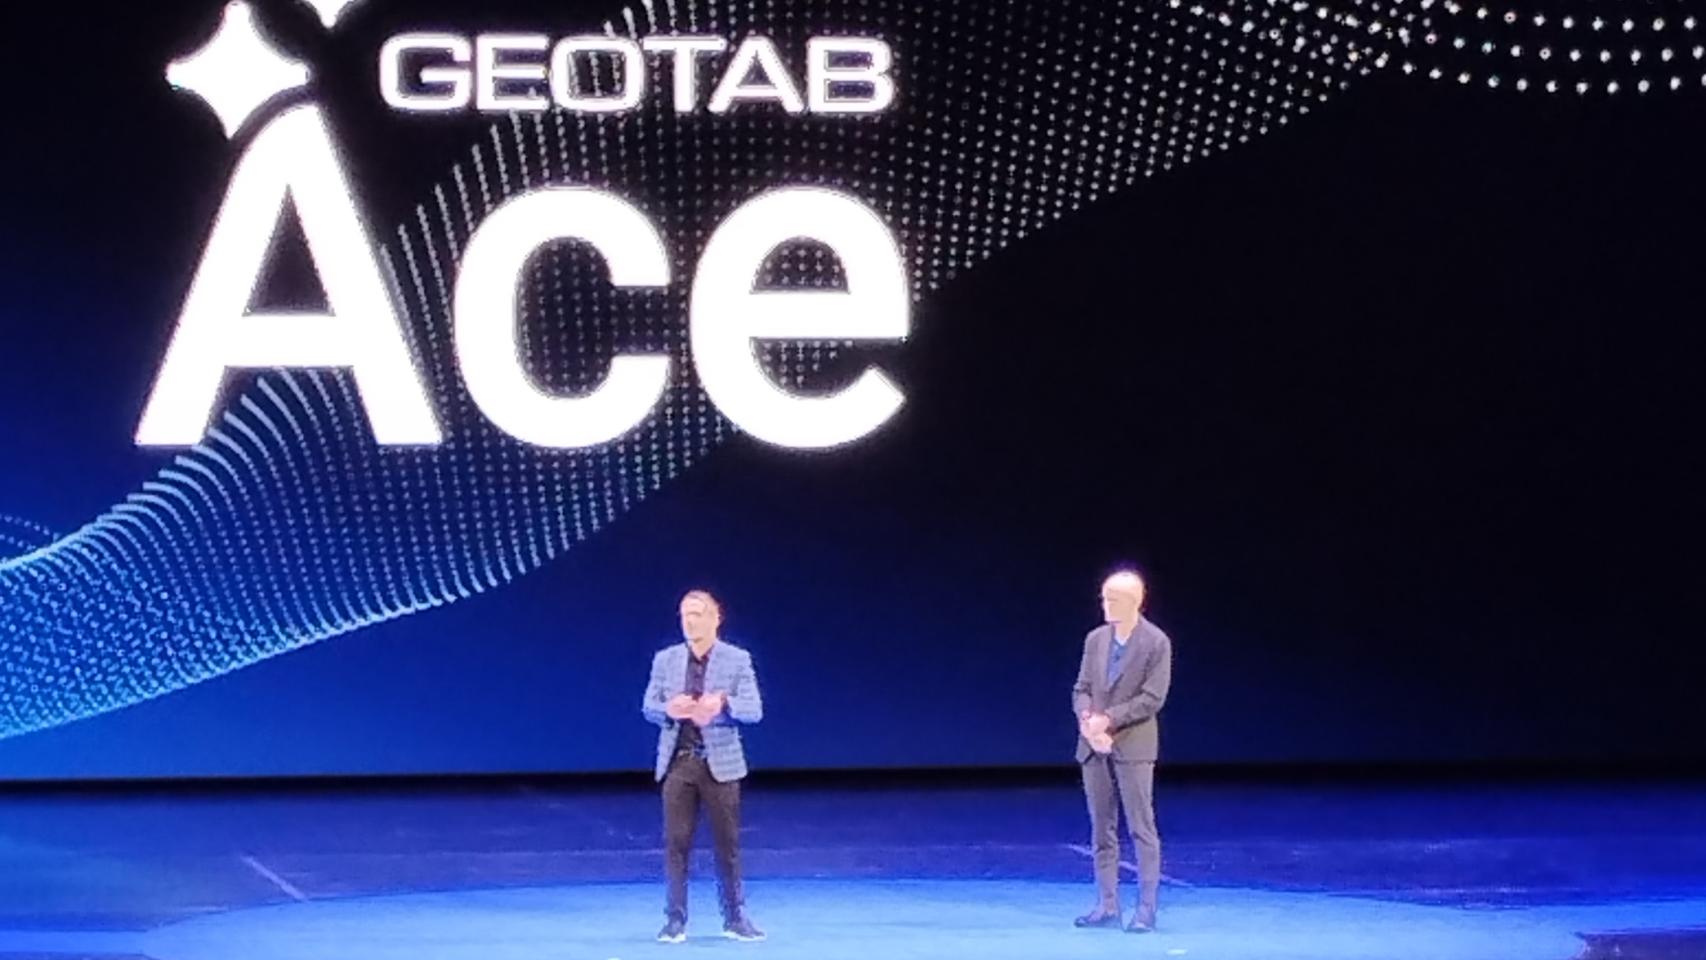 Keynote de inauguración del evento anual de Geotab en Las Vegas. En la foto Neil Cawse, fundador y CEO, acompañado por Mike Branch, vicepresidente de Data & Analytics.